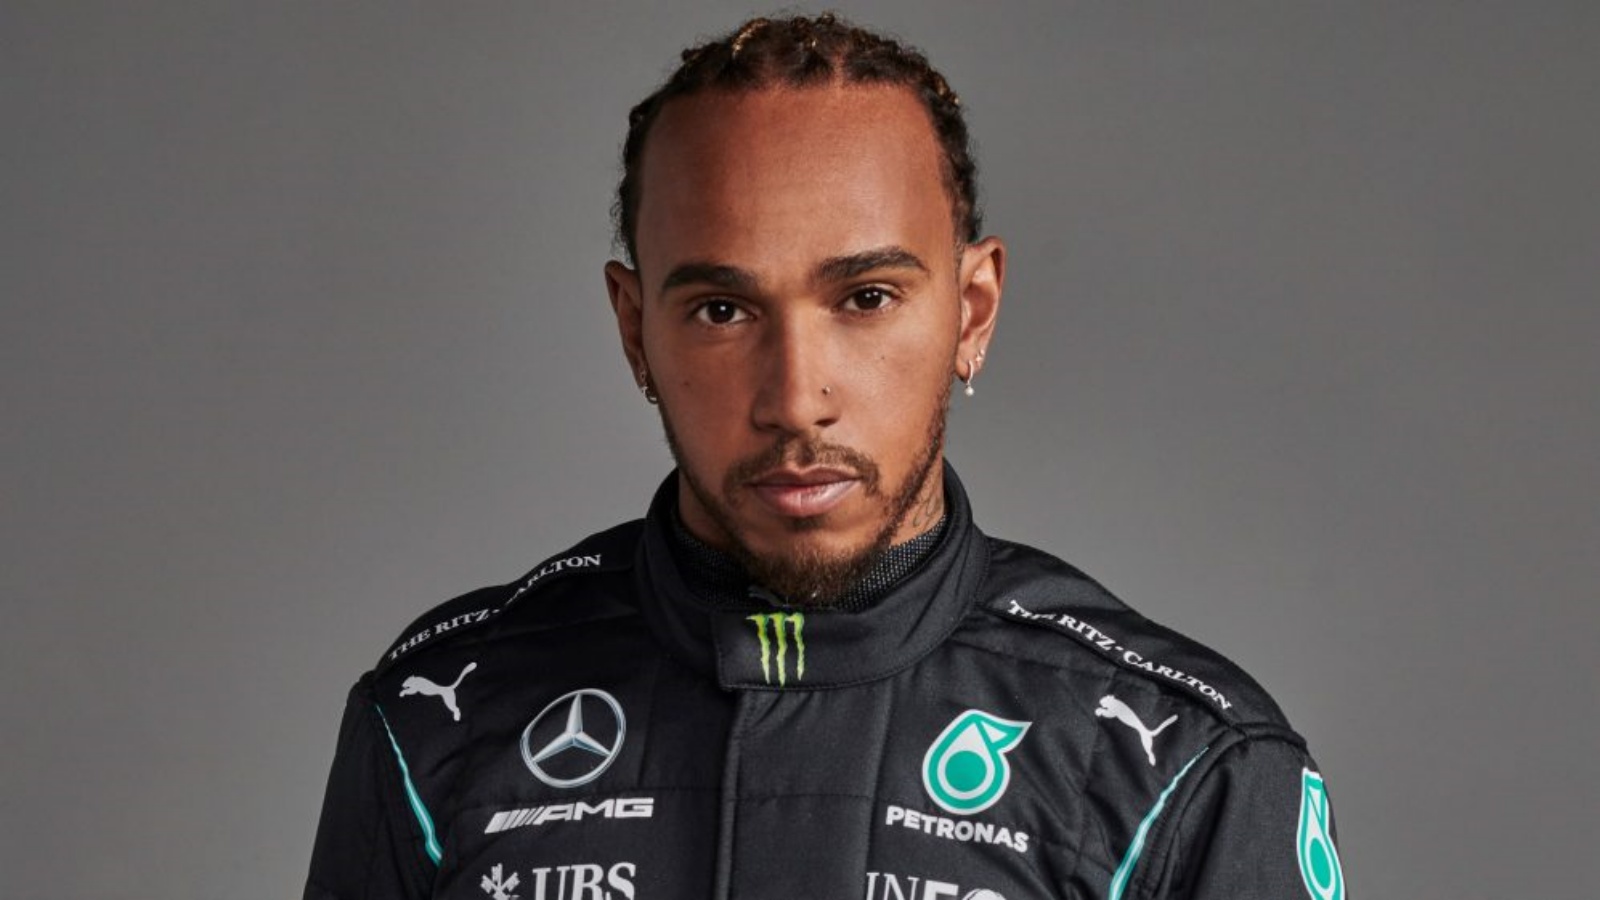 Formuła 1 Lewis Hamilton ZDRUNCINA Mercedes Ważny komunikat